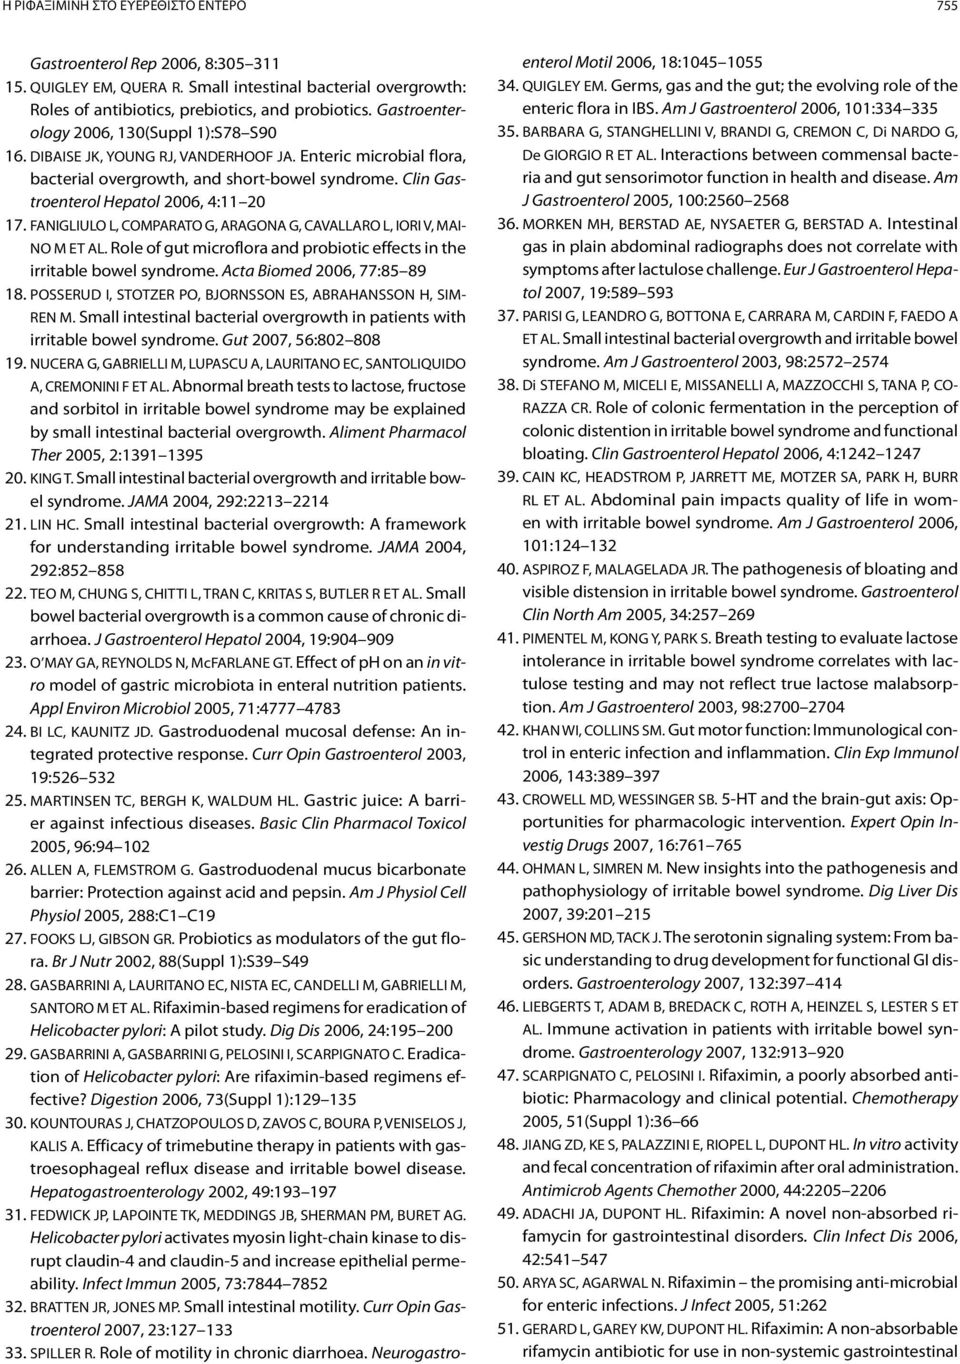 Clin Gastroenterol Hepatol 2006, 4:11 20 17. FANIGLIULO L, COMPARATO G, ARAGONA G, CAVALLARO L, IORI V, MAI- NO M ET AL. Role of gut microflora and probiotic effects in the irritable bowel syndrome.